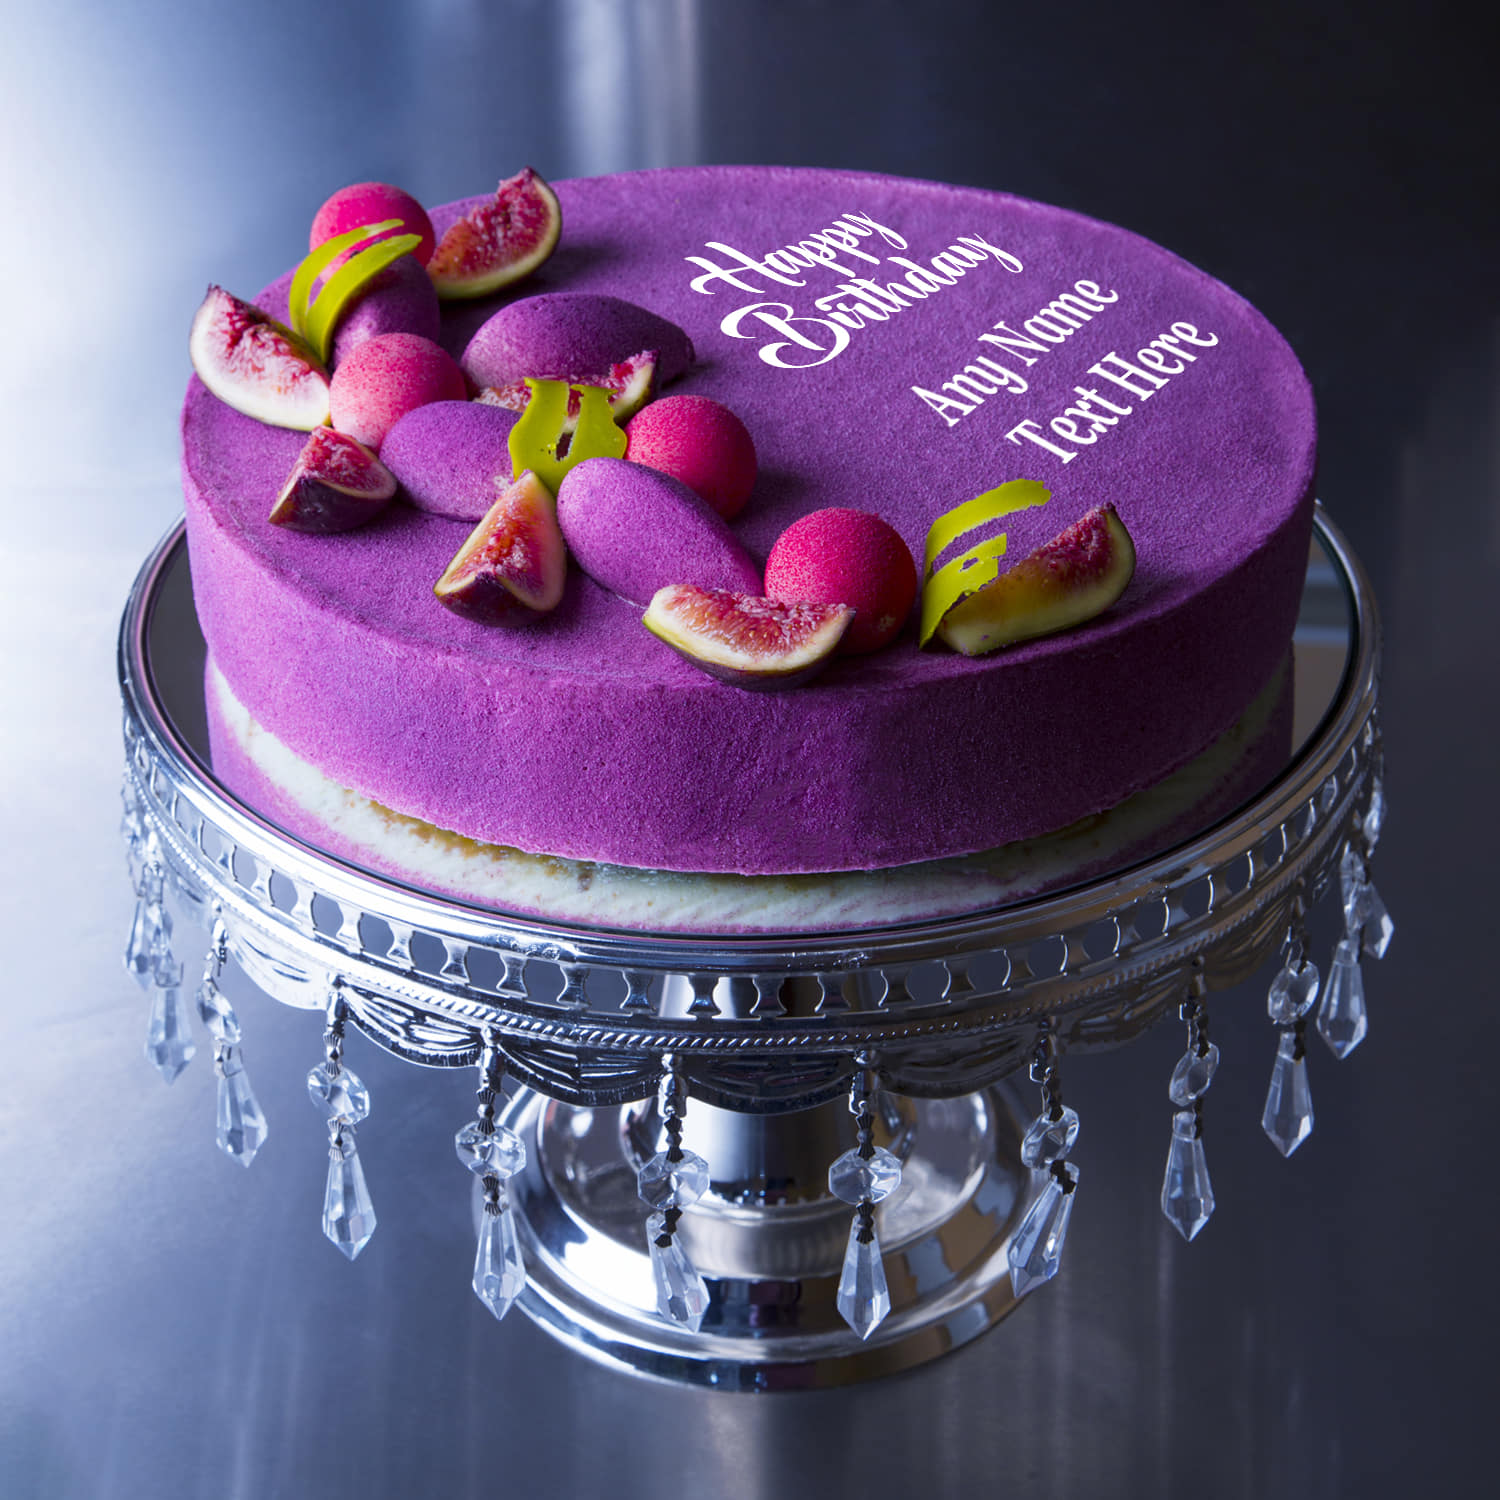 6 Best Funny Birthday Cakes & 3 Tasty Alternatives